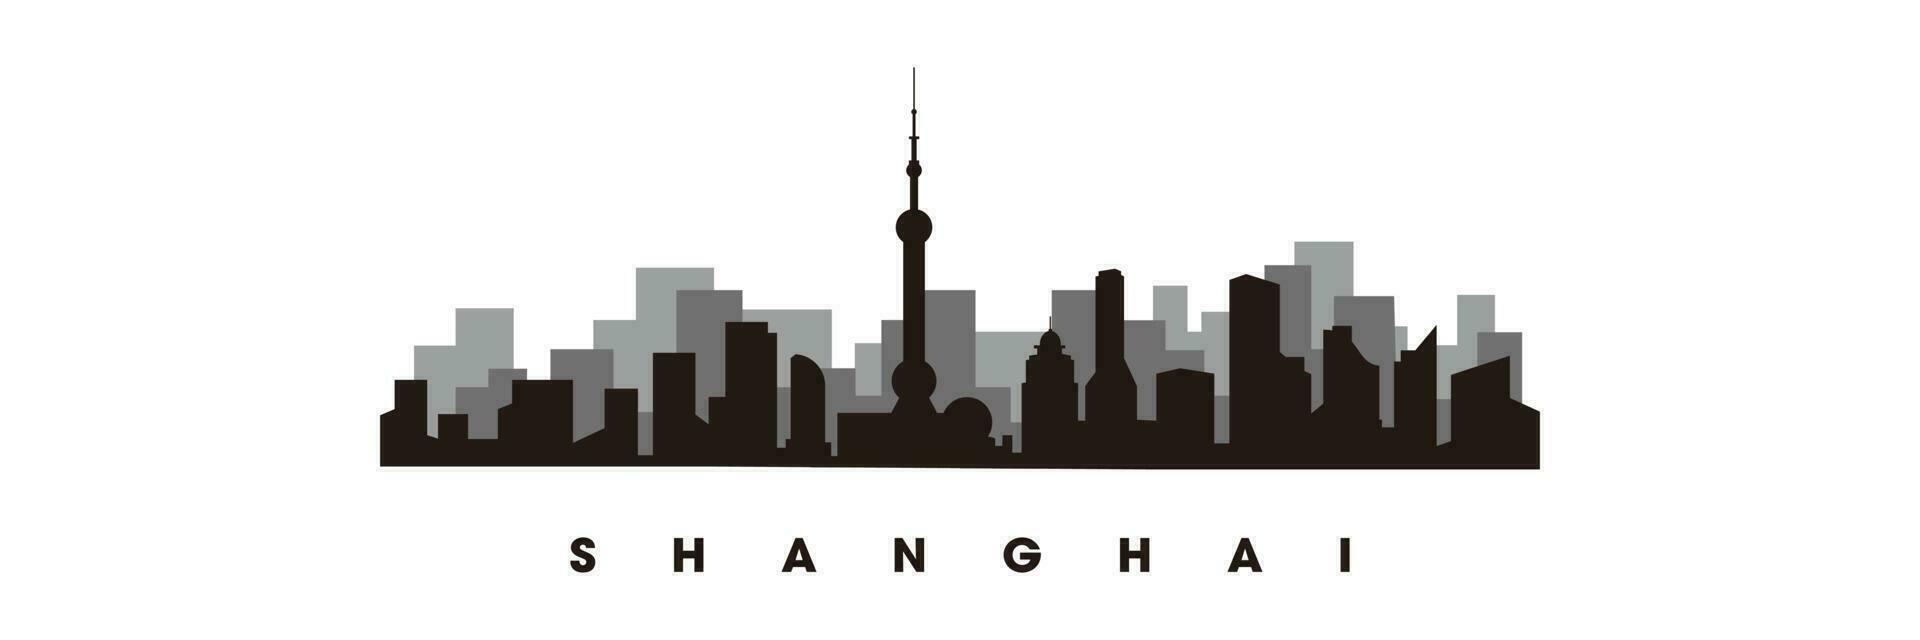 Shanghai Horizont und Sehenswürdigkeiten Silhouette Vektor